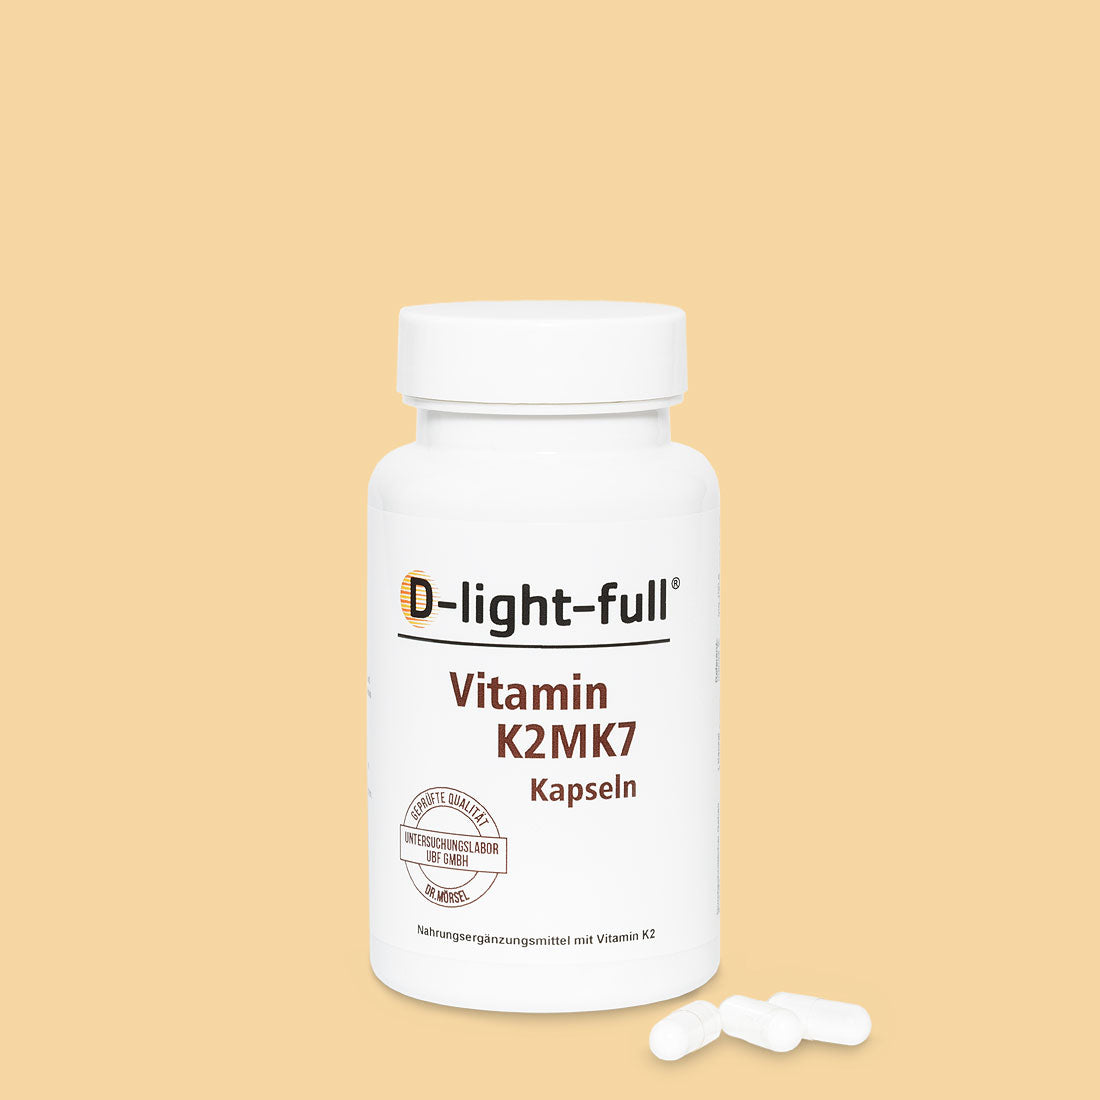 D-light-full K2 MK7 (180 capsules vegan)